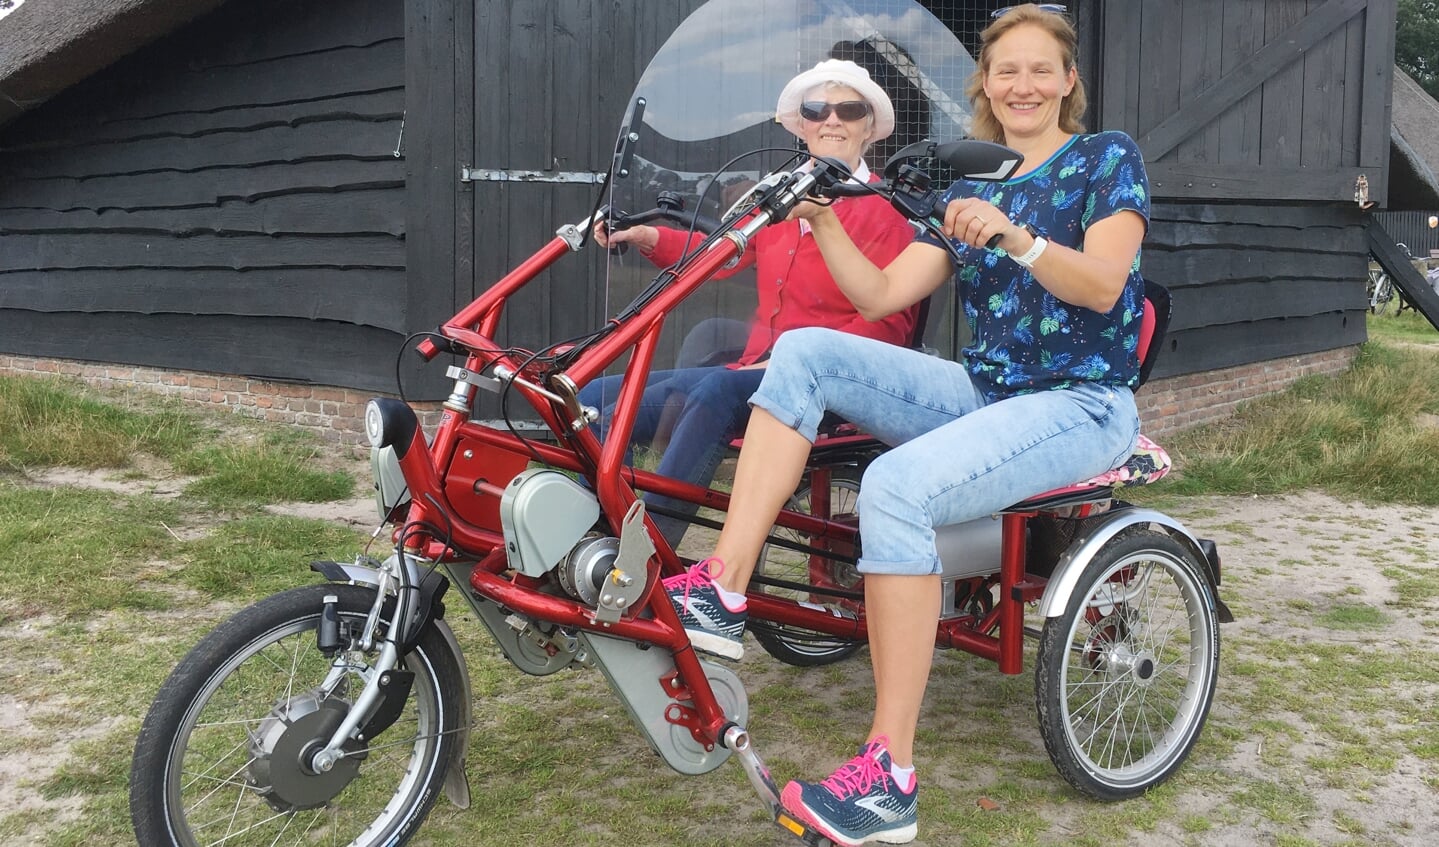 Op de foto een bijzondere training voor 2bike4alzheimer: Annelies Proper samen met haar moeder Ans Colenbrander op een duofiets op de Renderklippen 